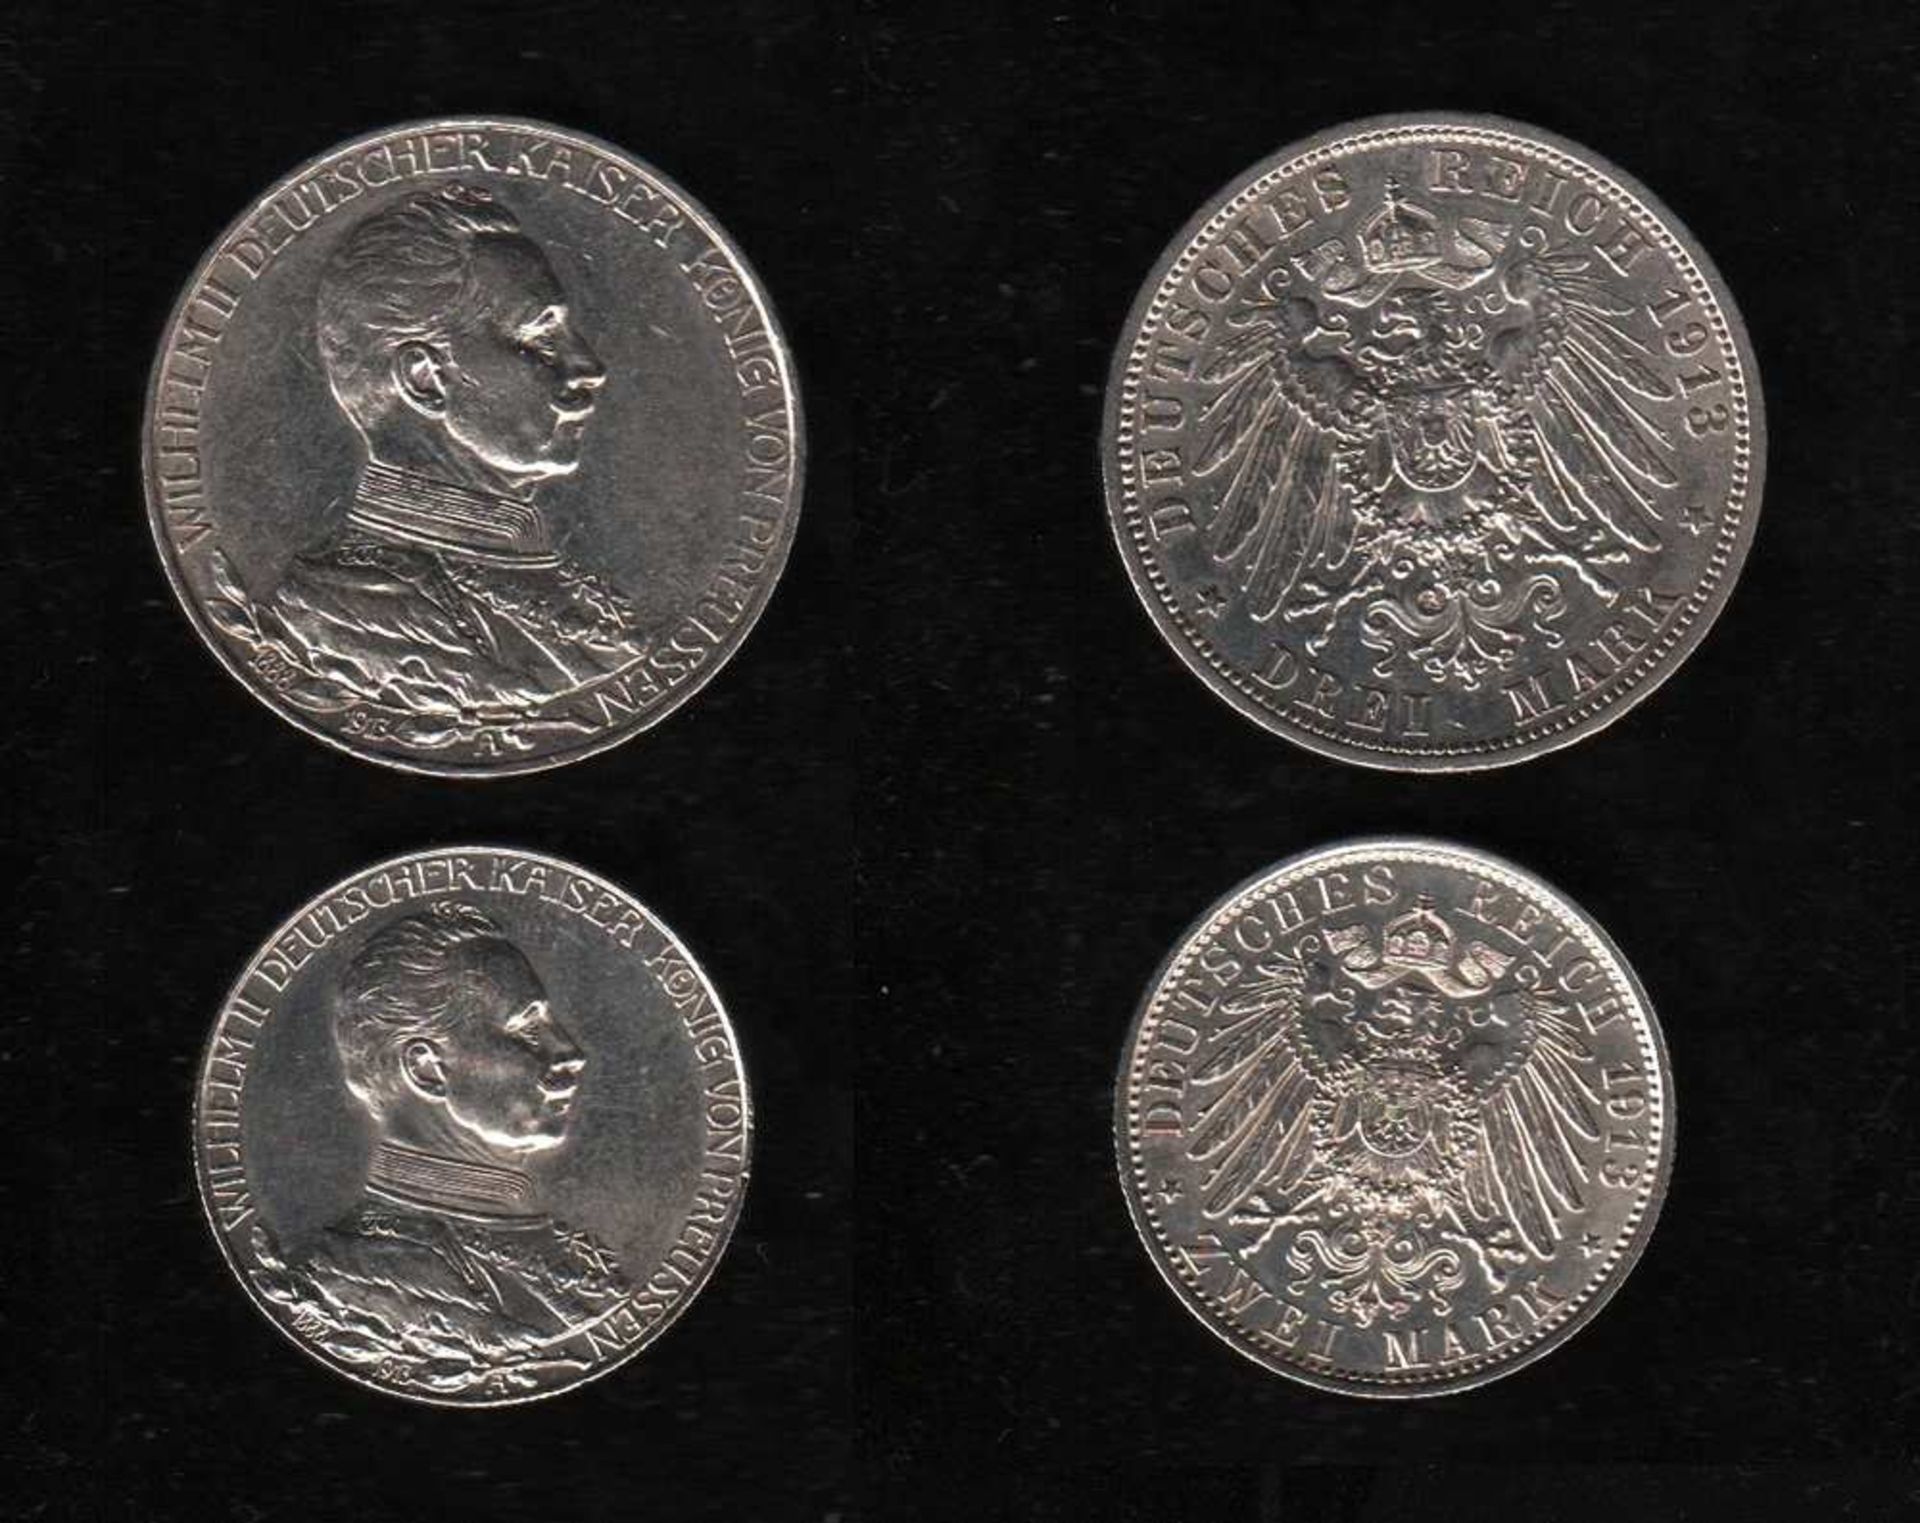 # Deutsches Reich. Silbermünzen. 2 Mark und 3 Mark. Wilhelm II., Deutscher Kaiser. Zum 25jährigen